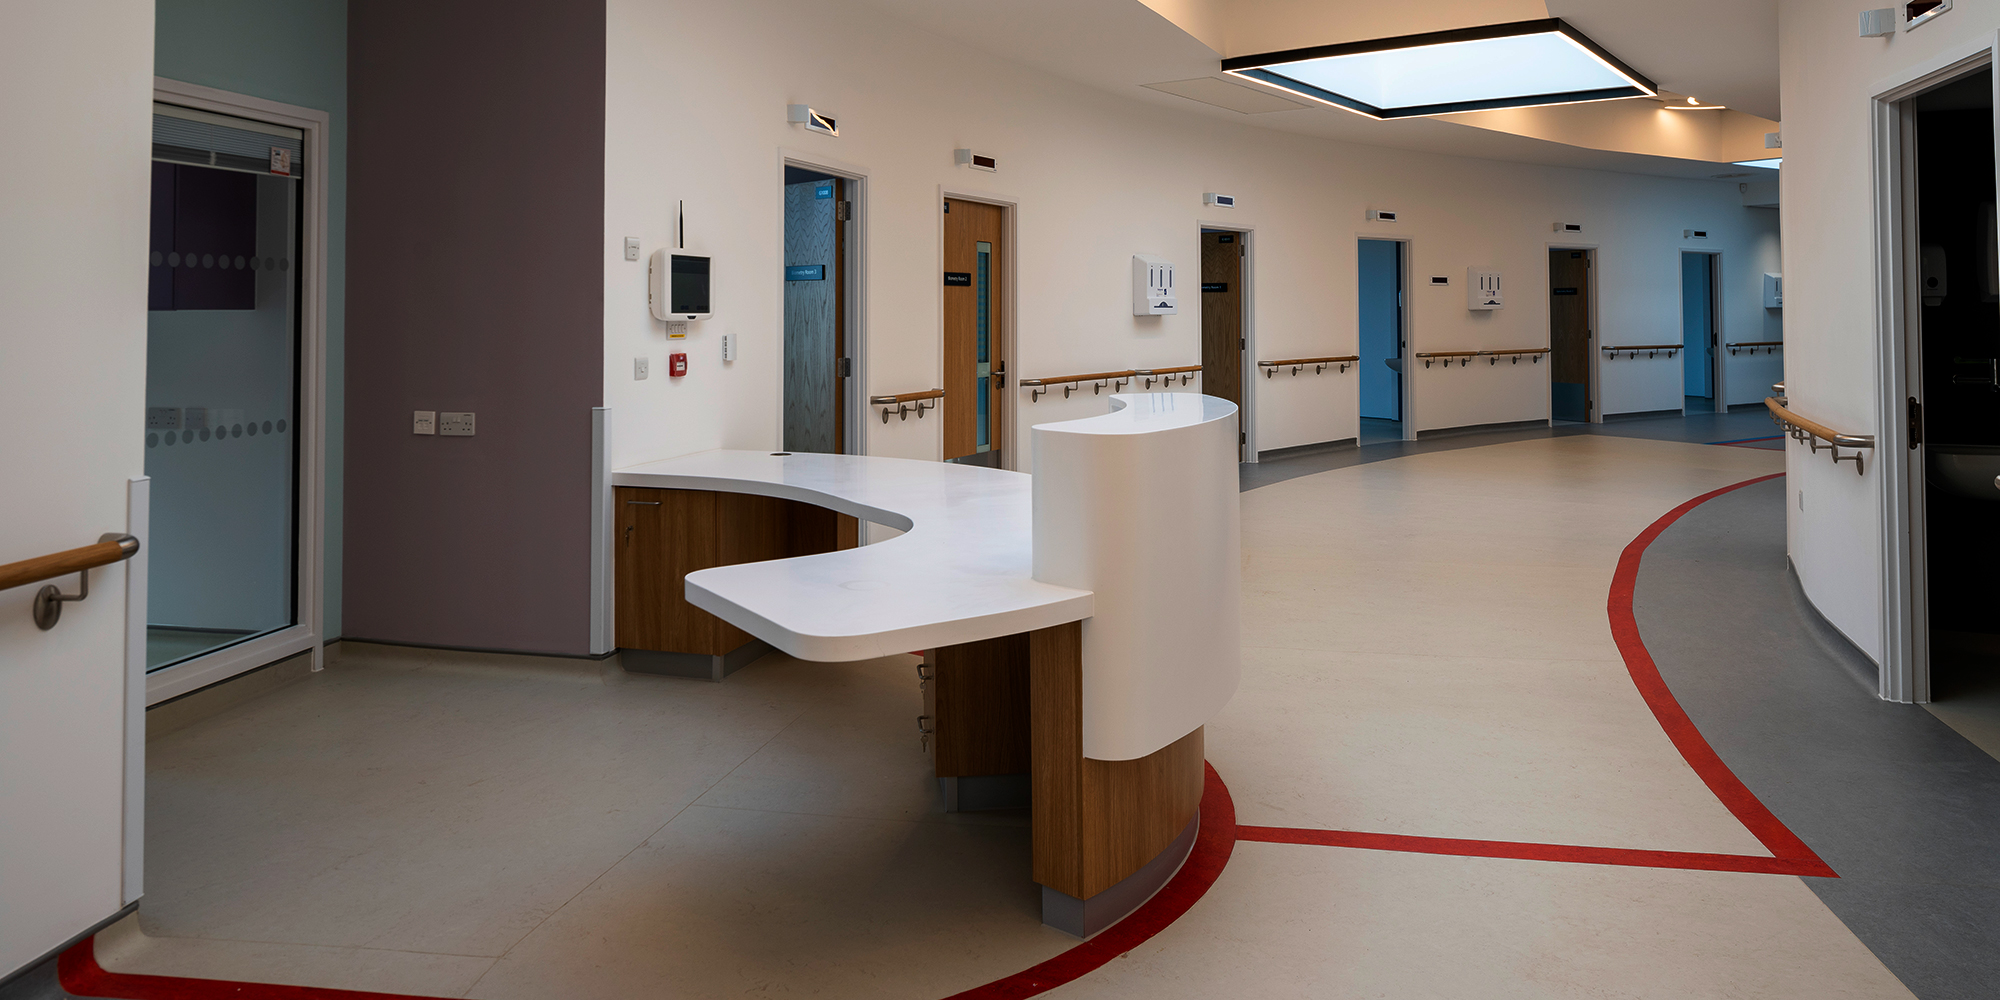 Reception area inside NHS Golden Eye